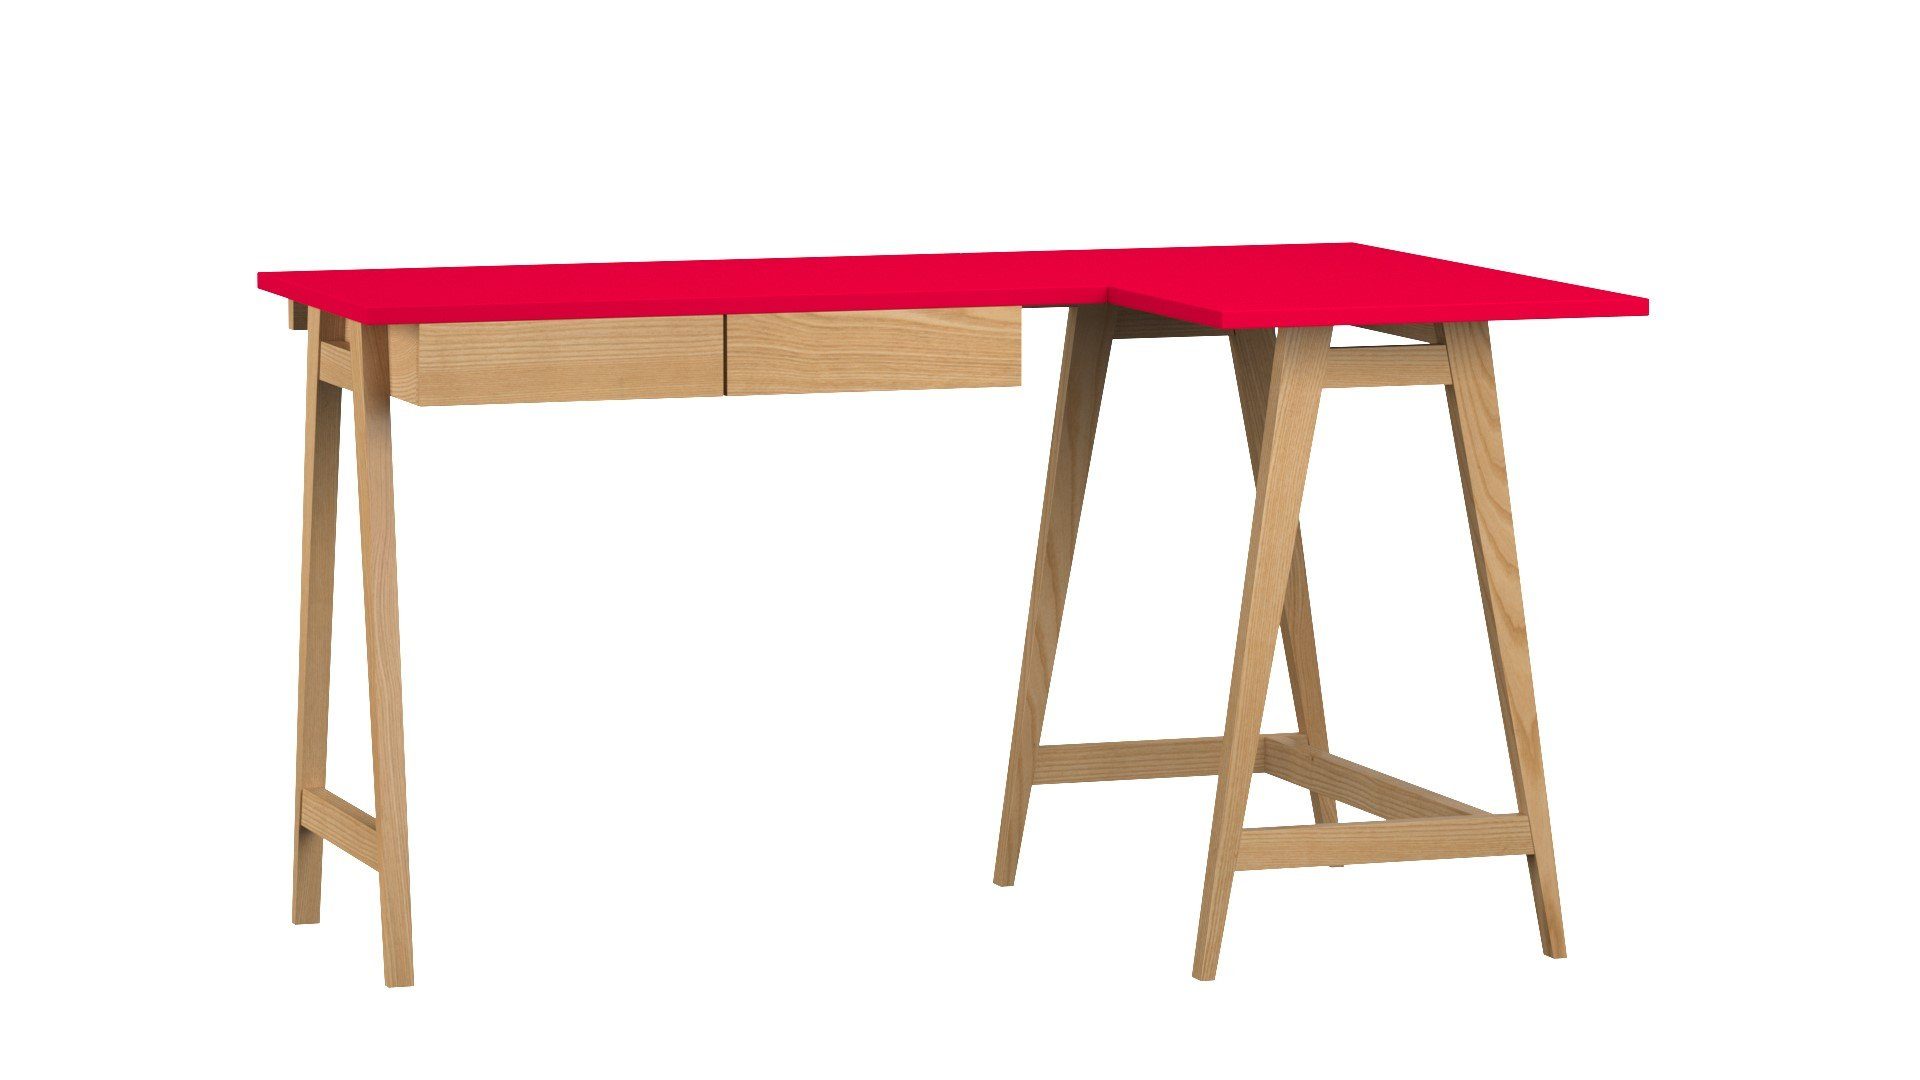 Siblo Schreibtisch Eckschreibtisch Katia mit Schubladen - Moderner Schreibtisch - minimalistisches Design - Kinderzimmer - Jugendzimmer - MDF-Platte - Eschenholz (Eckschreibtisch Katia mit Schubladen) Rot